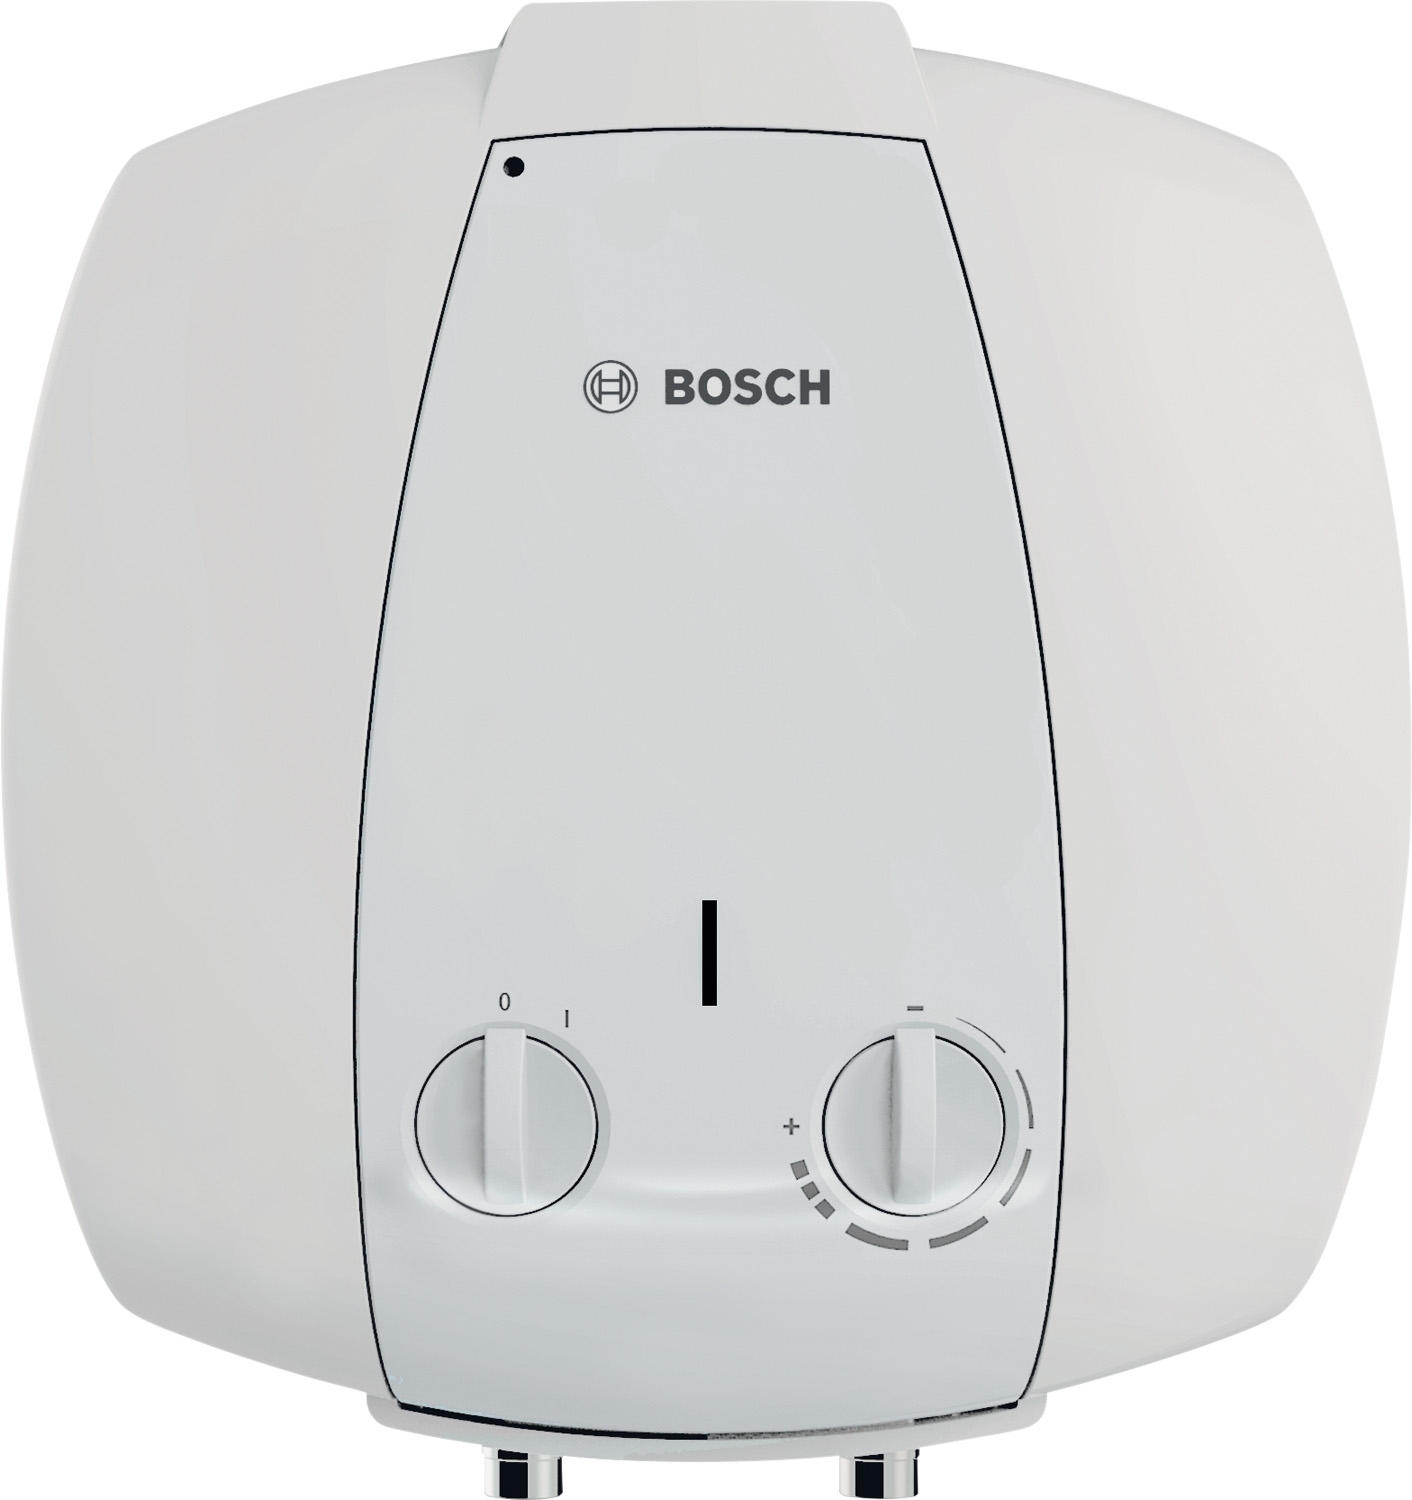 Бойлер на 1500 Вт / 1,5 кВт Bosch TR 2000 T 10 B (7736504745)